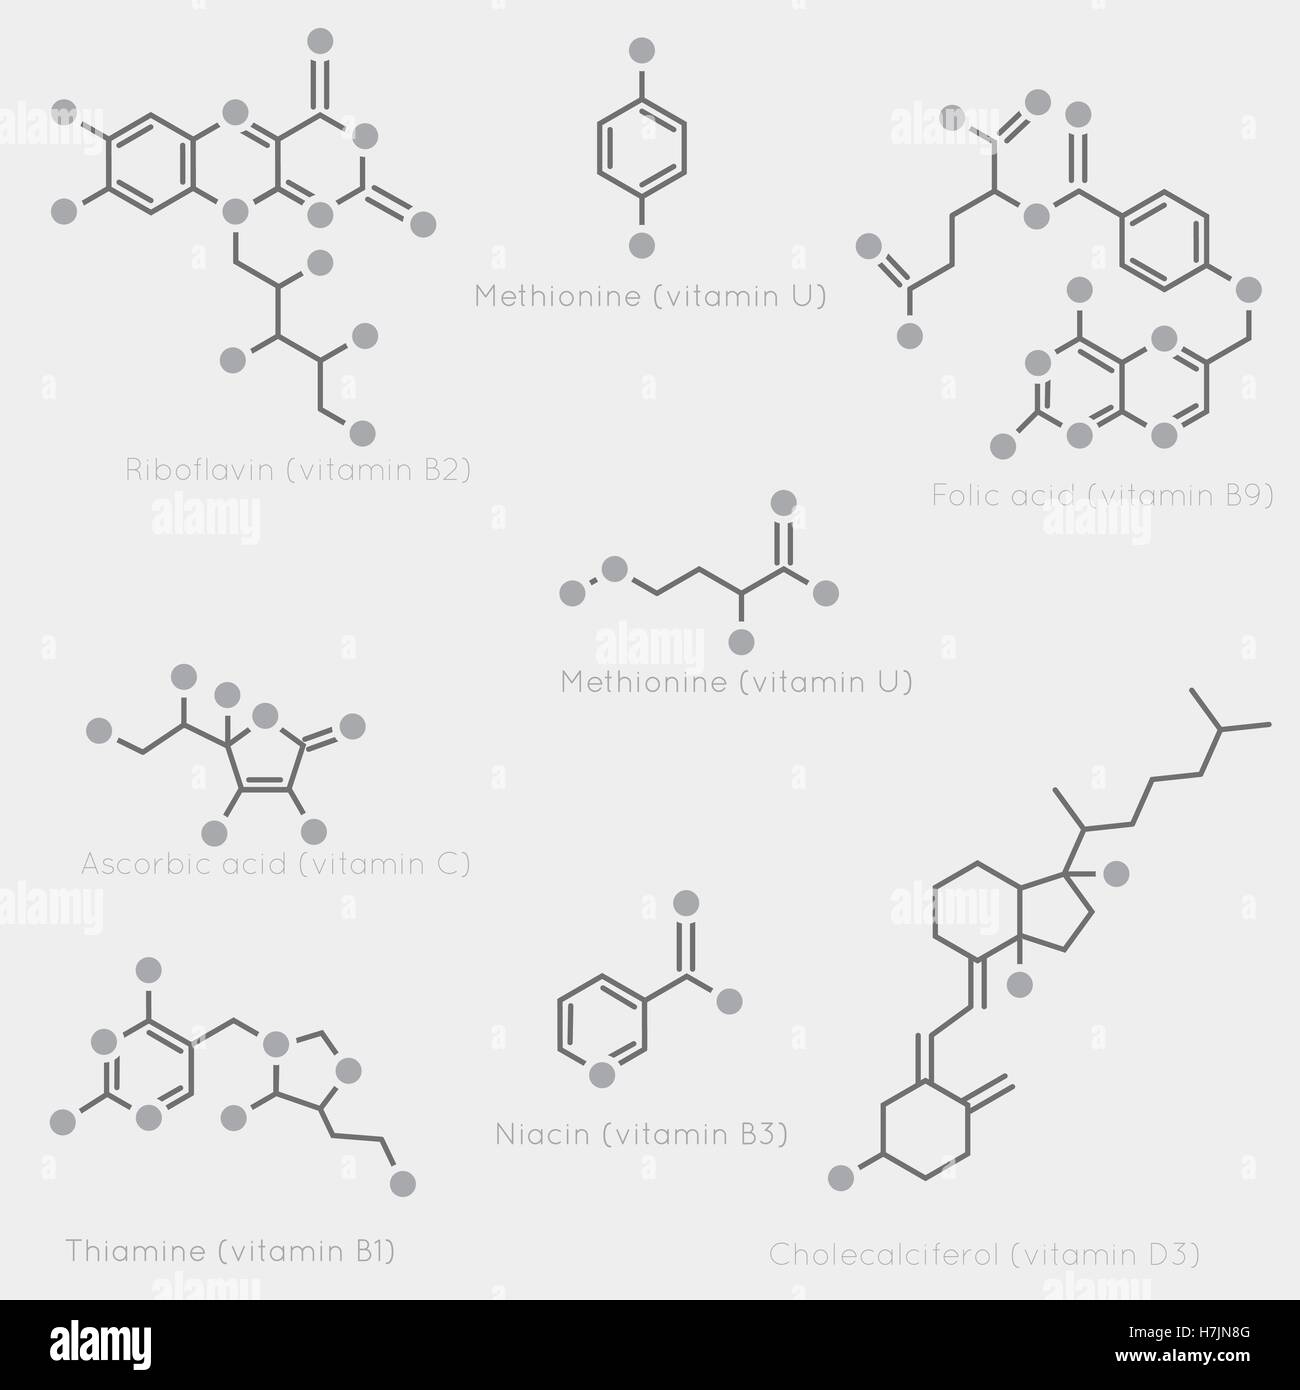 Le formule di scheletro di alcune vitamine. Immagine schematica chimica di molecole organiche e nutrienti. Illustrazione Vettoriale